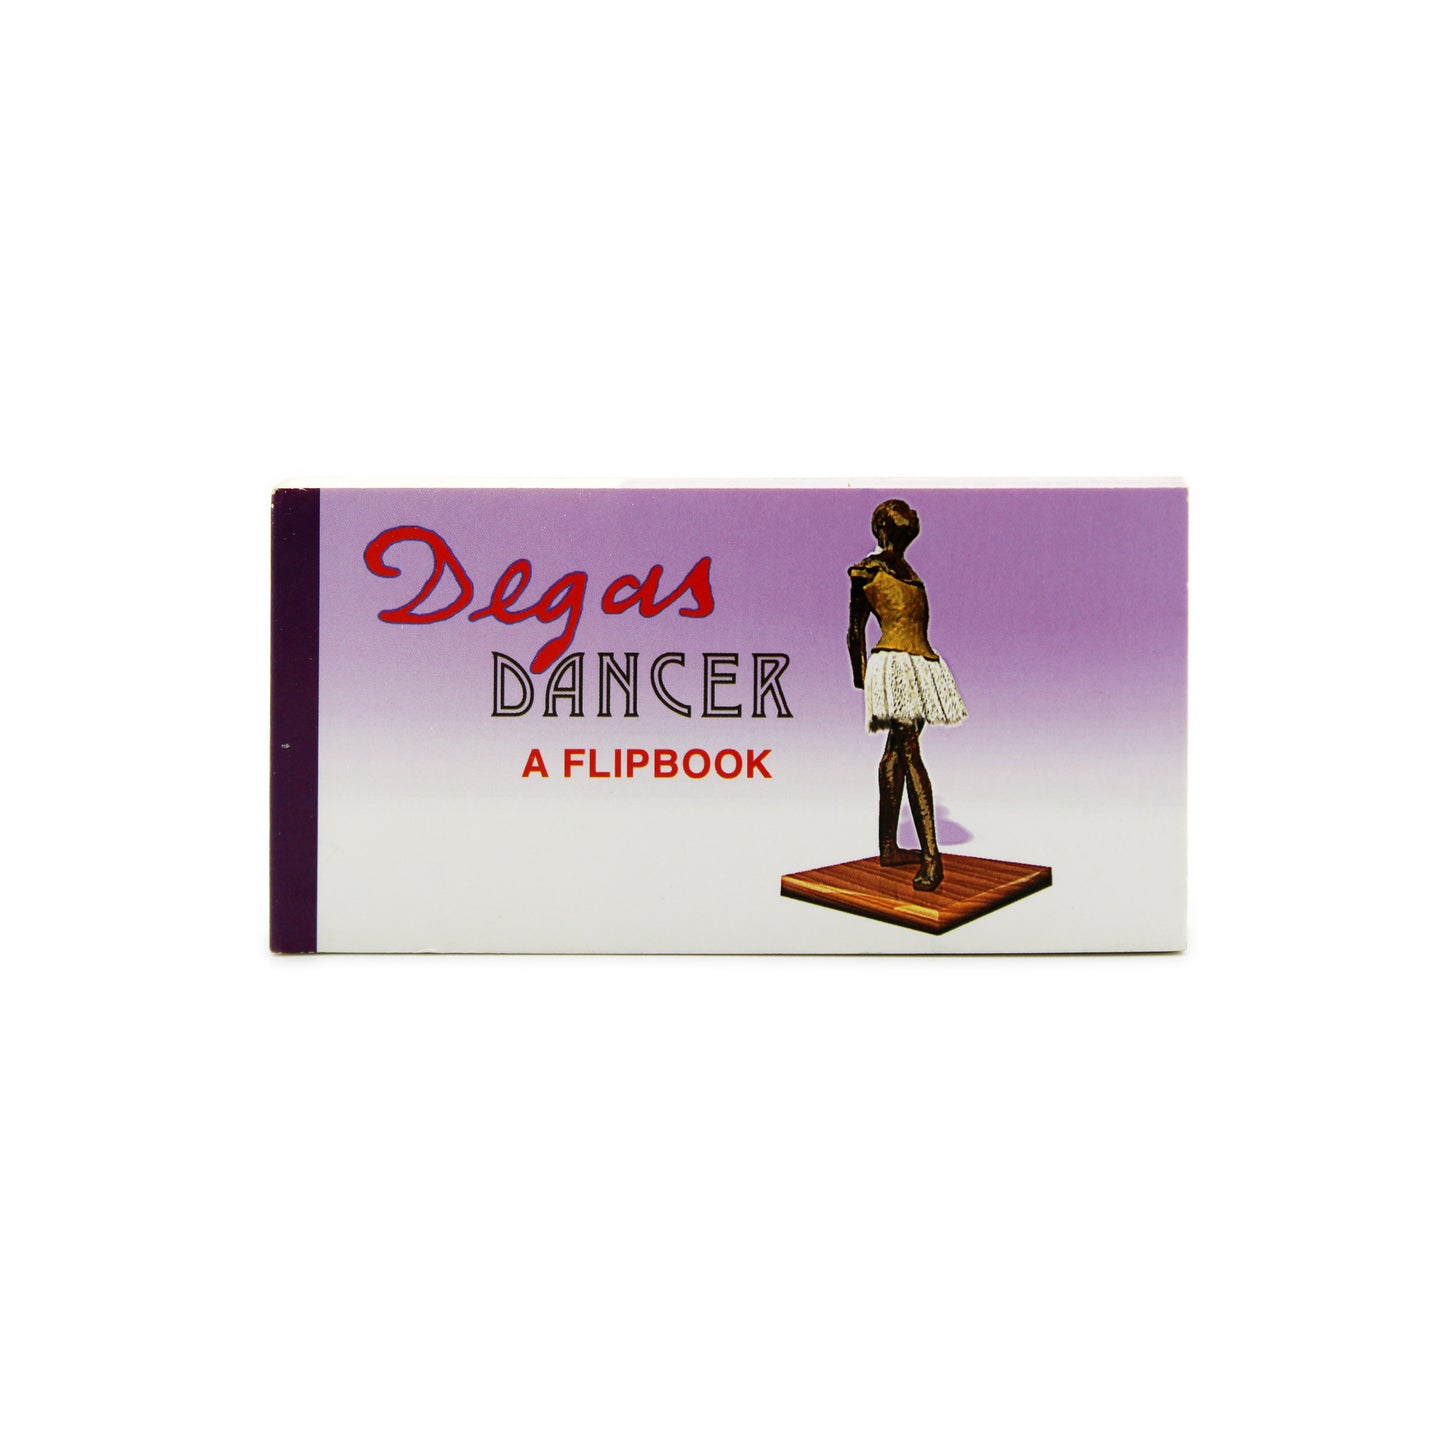 Degas Dancer: un libro animado